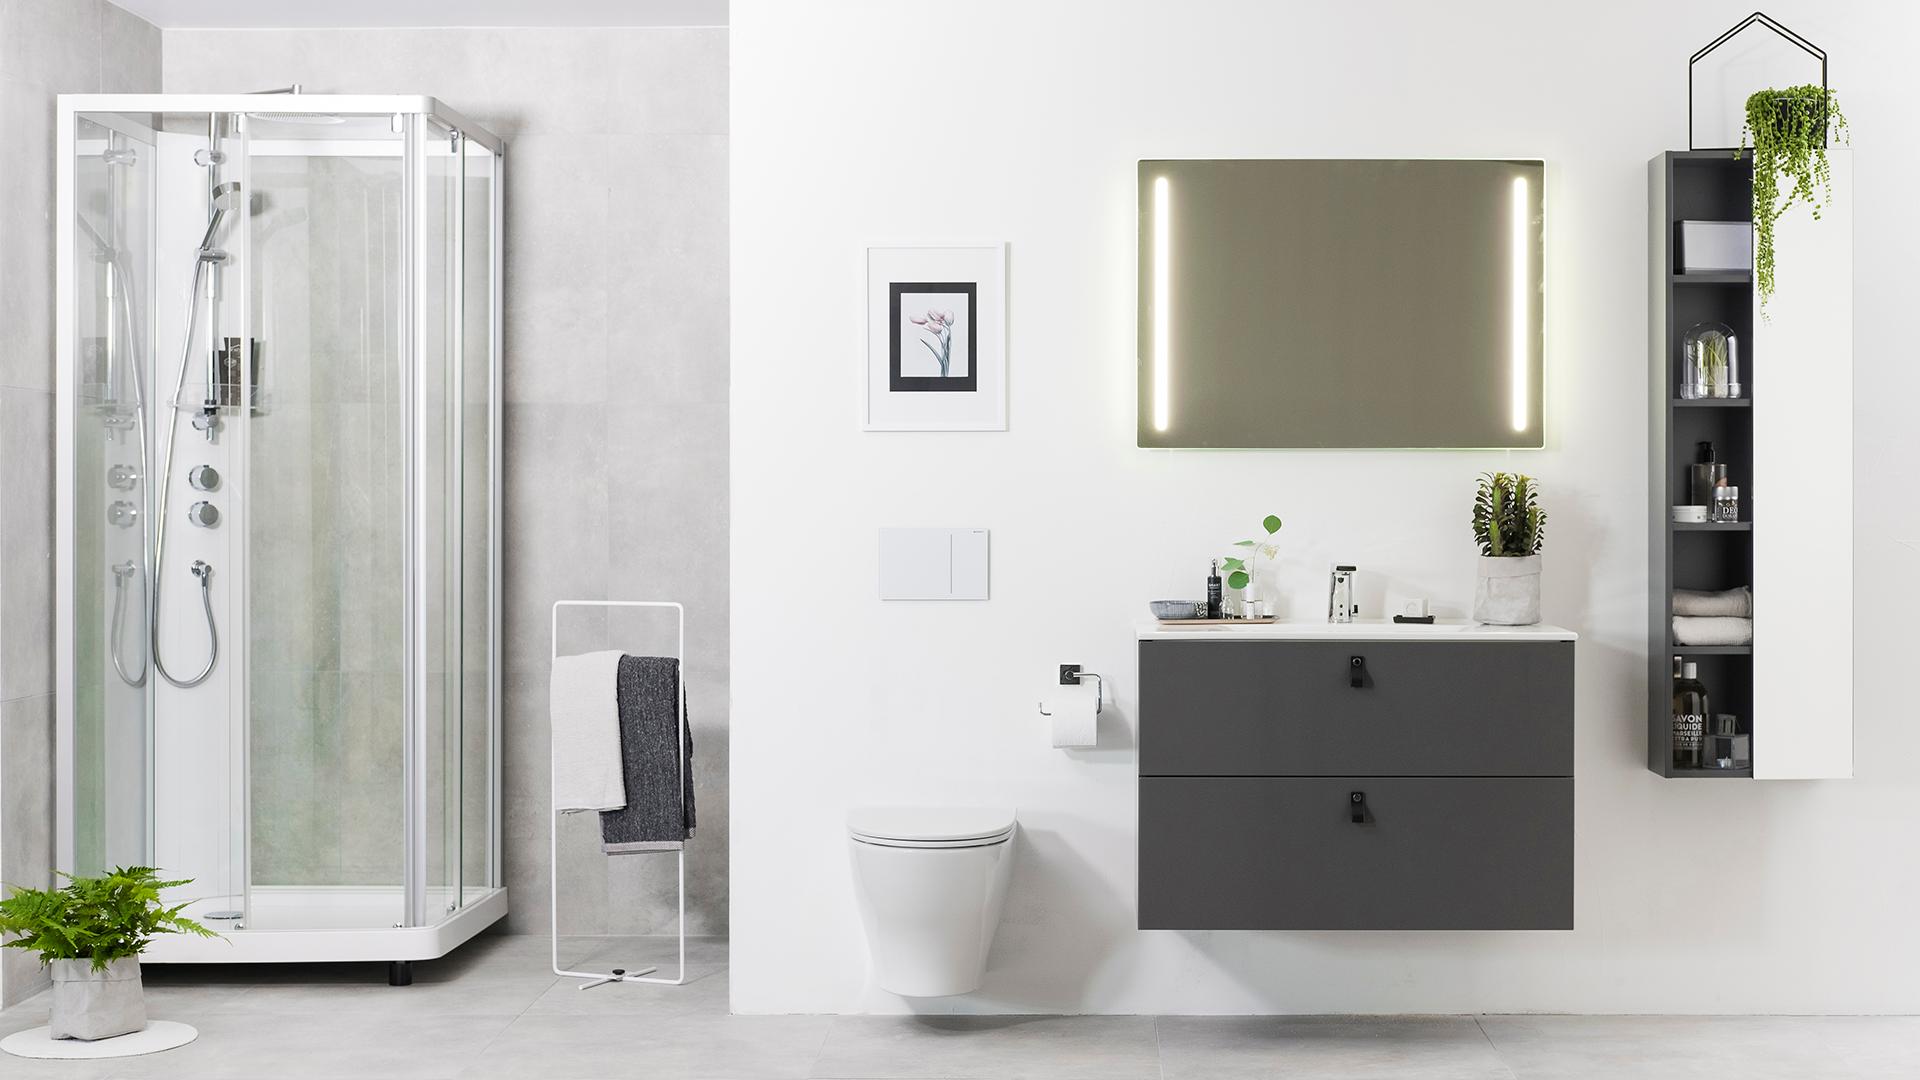 IDO Elegant -alakaappi ja tasoallas, IDO Glow -seinä-wc ja IDO Showerama -suihkukaappi.